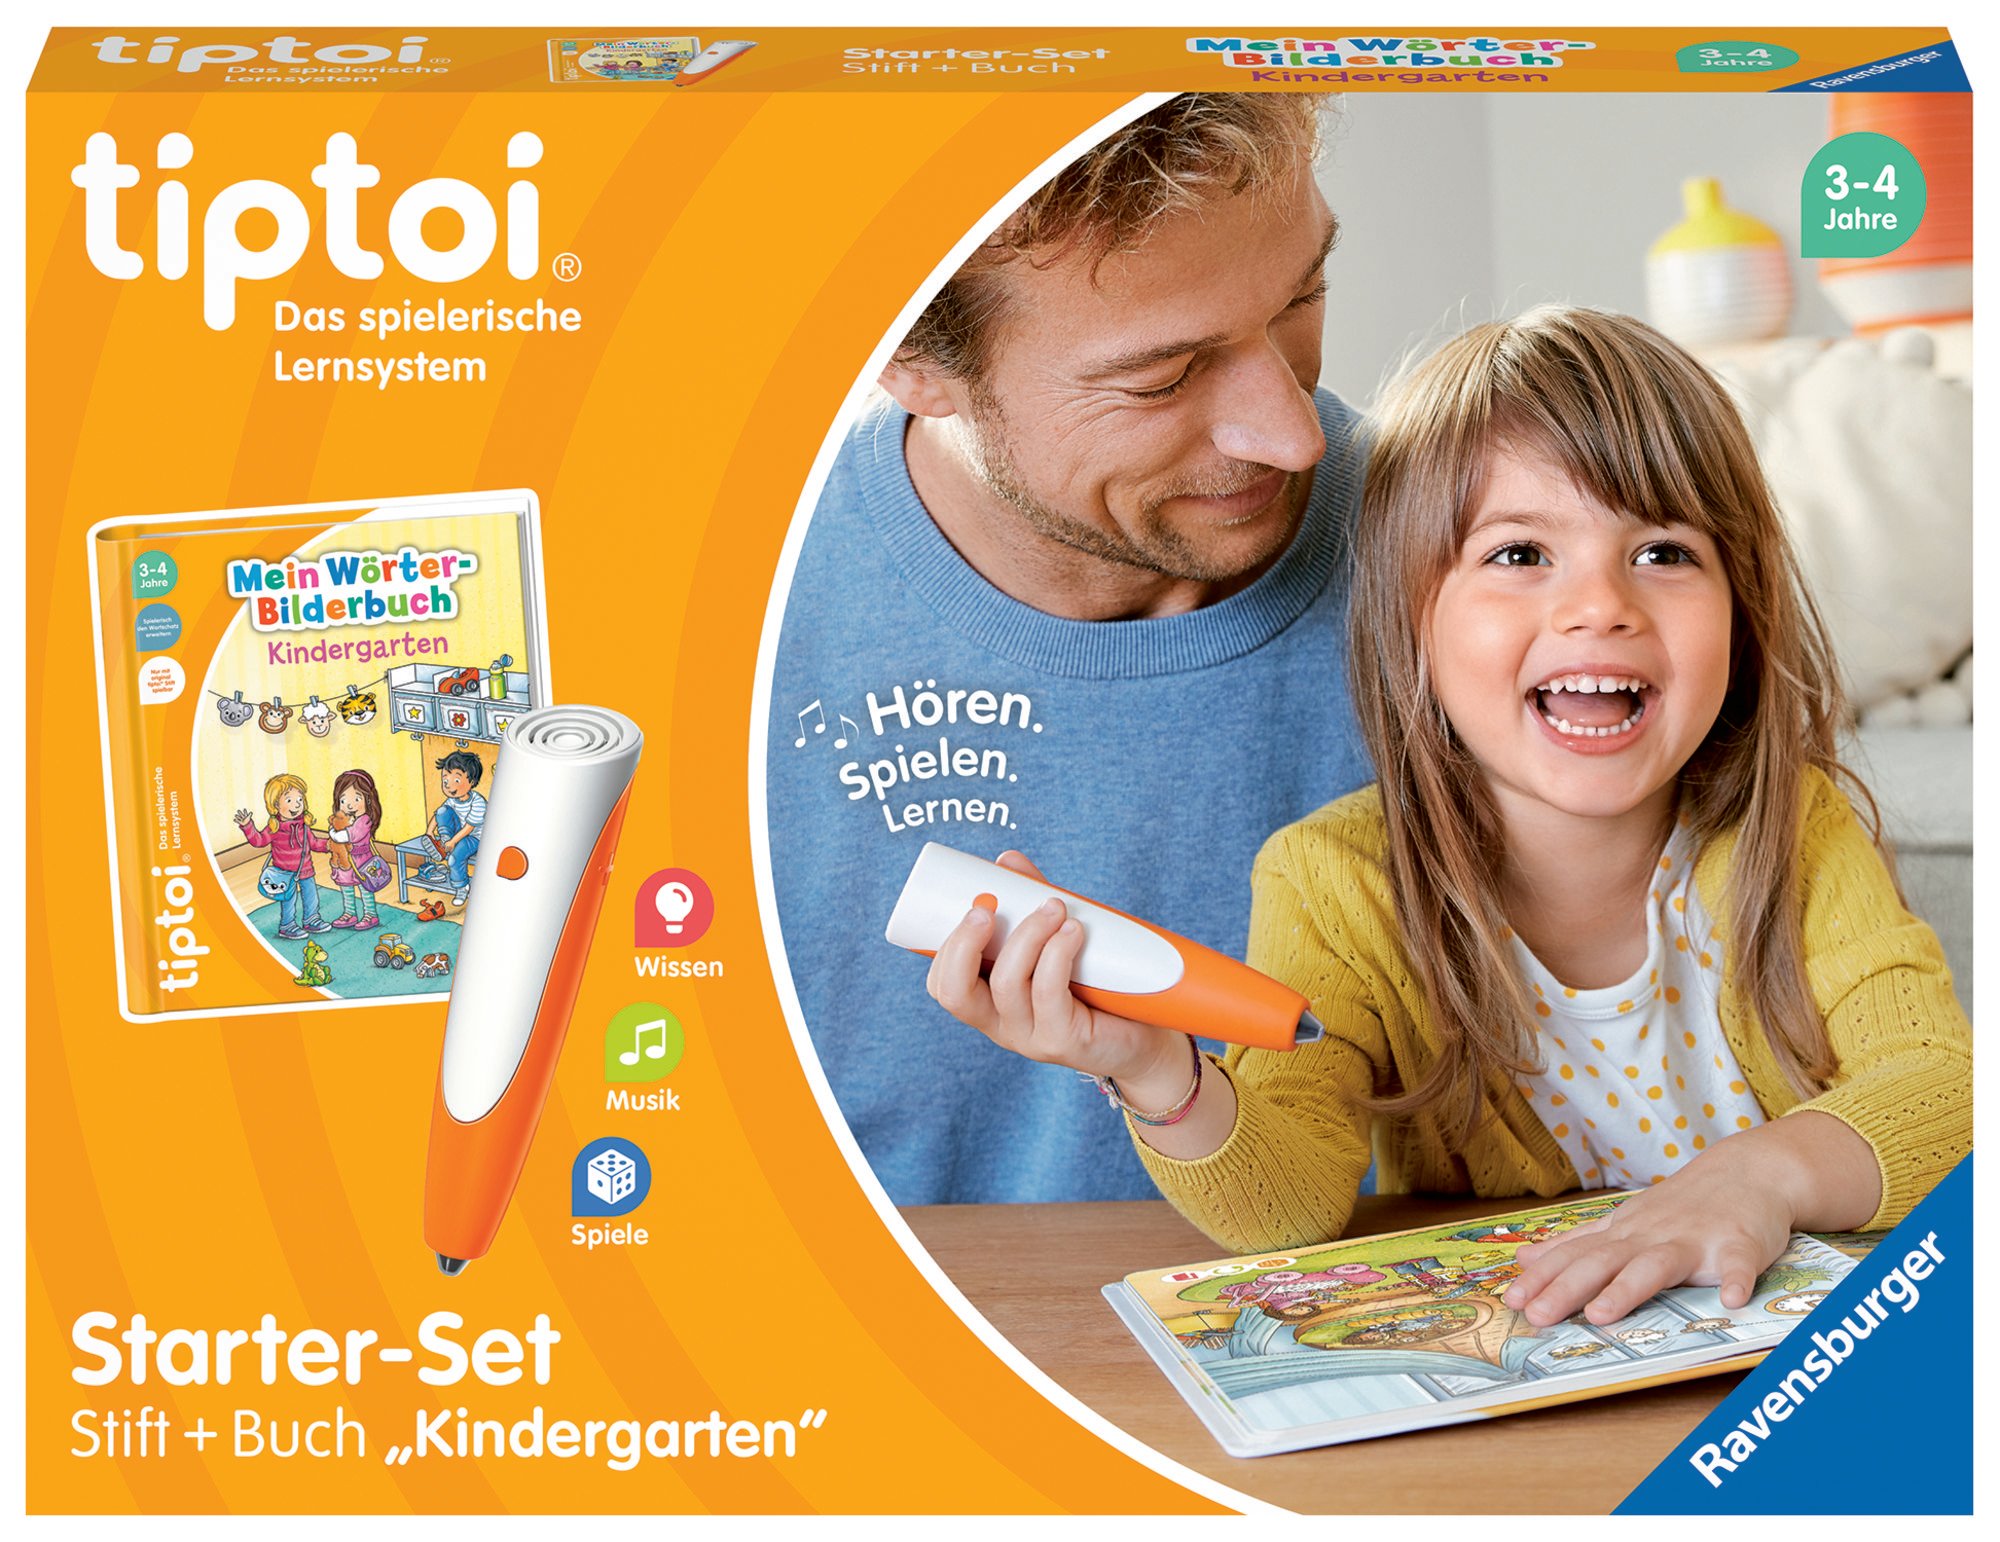 Ravensburger 00113 - tiptoi® Starter-Set, Stift + Buch Wörter-Bilderbuch  Kindergarten, Lernsystem' kaufen - Spielwaren